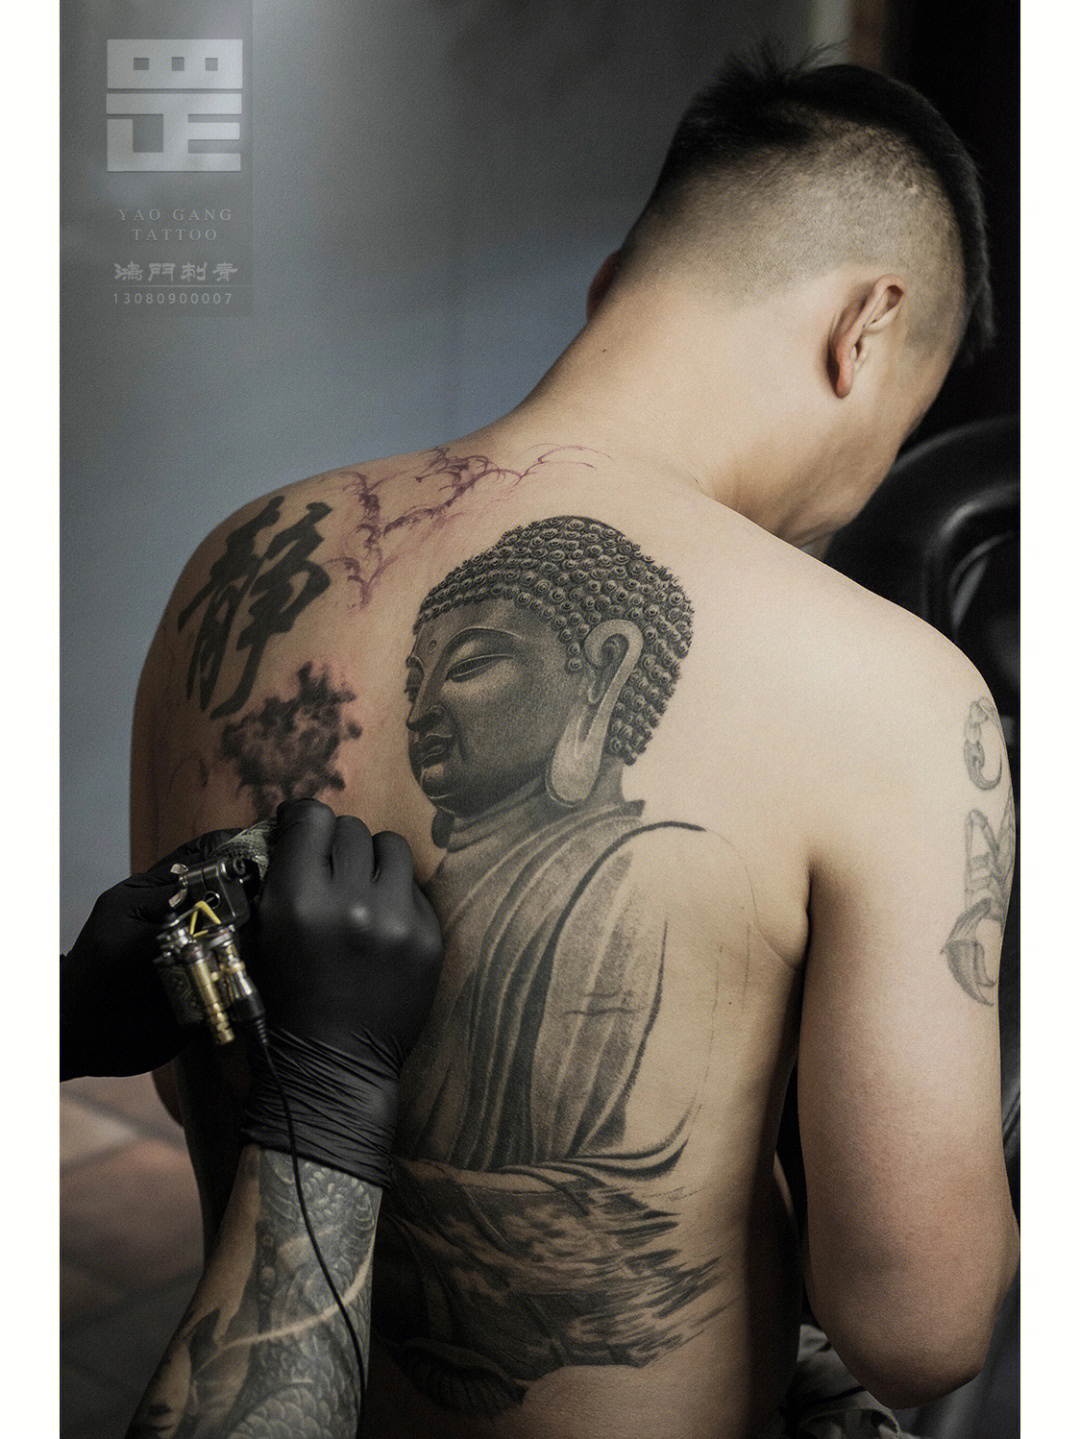 佛祖纹身图案图片